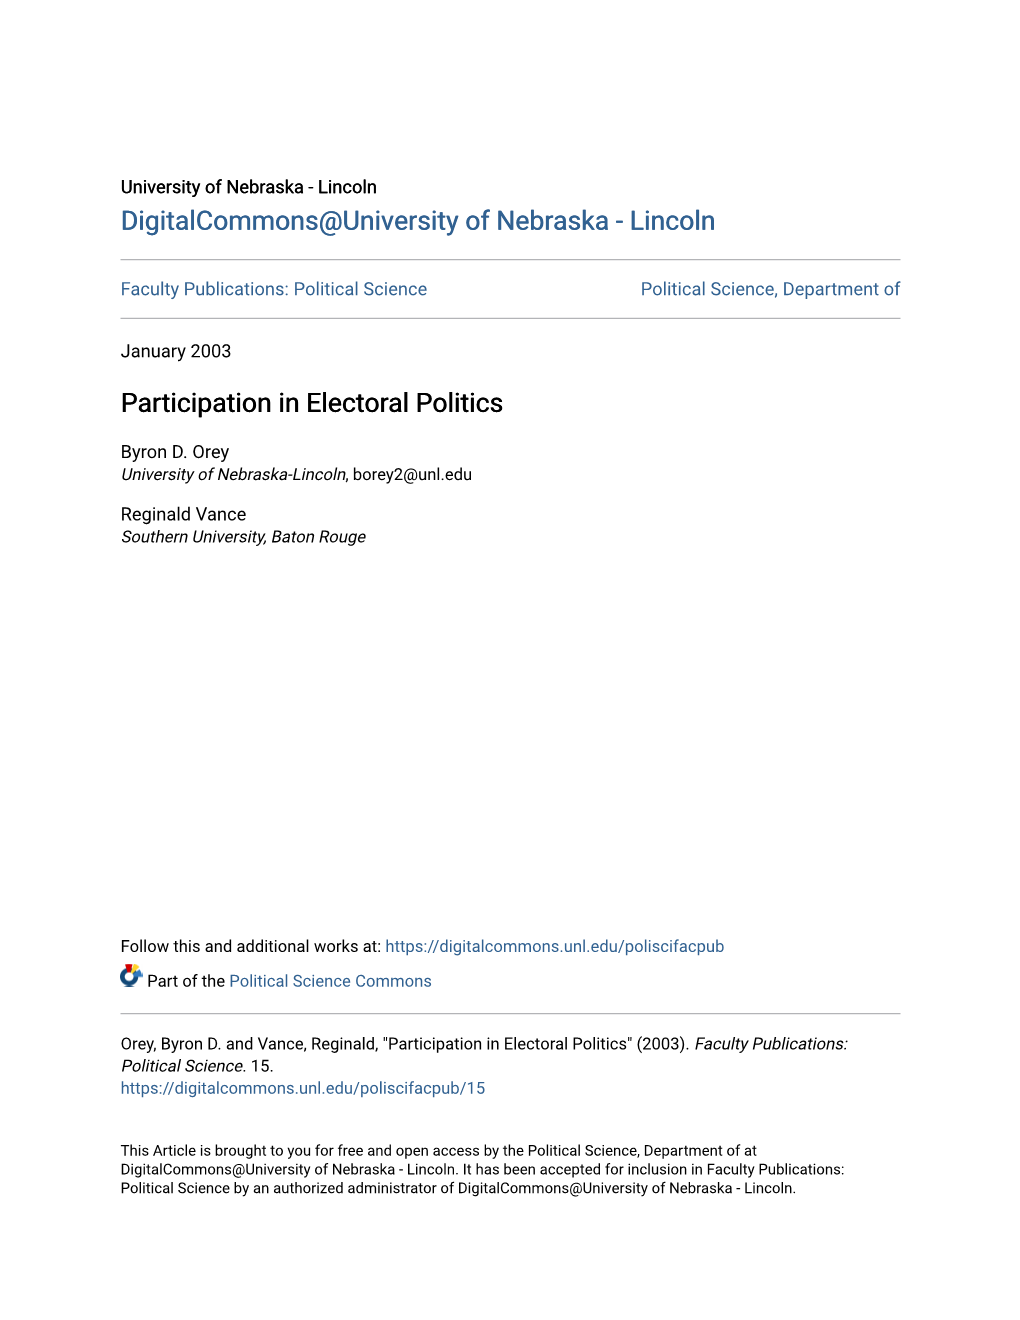 Participation in Electoral Politics